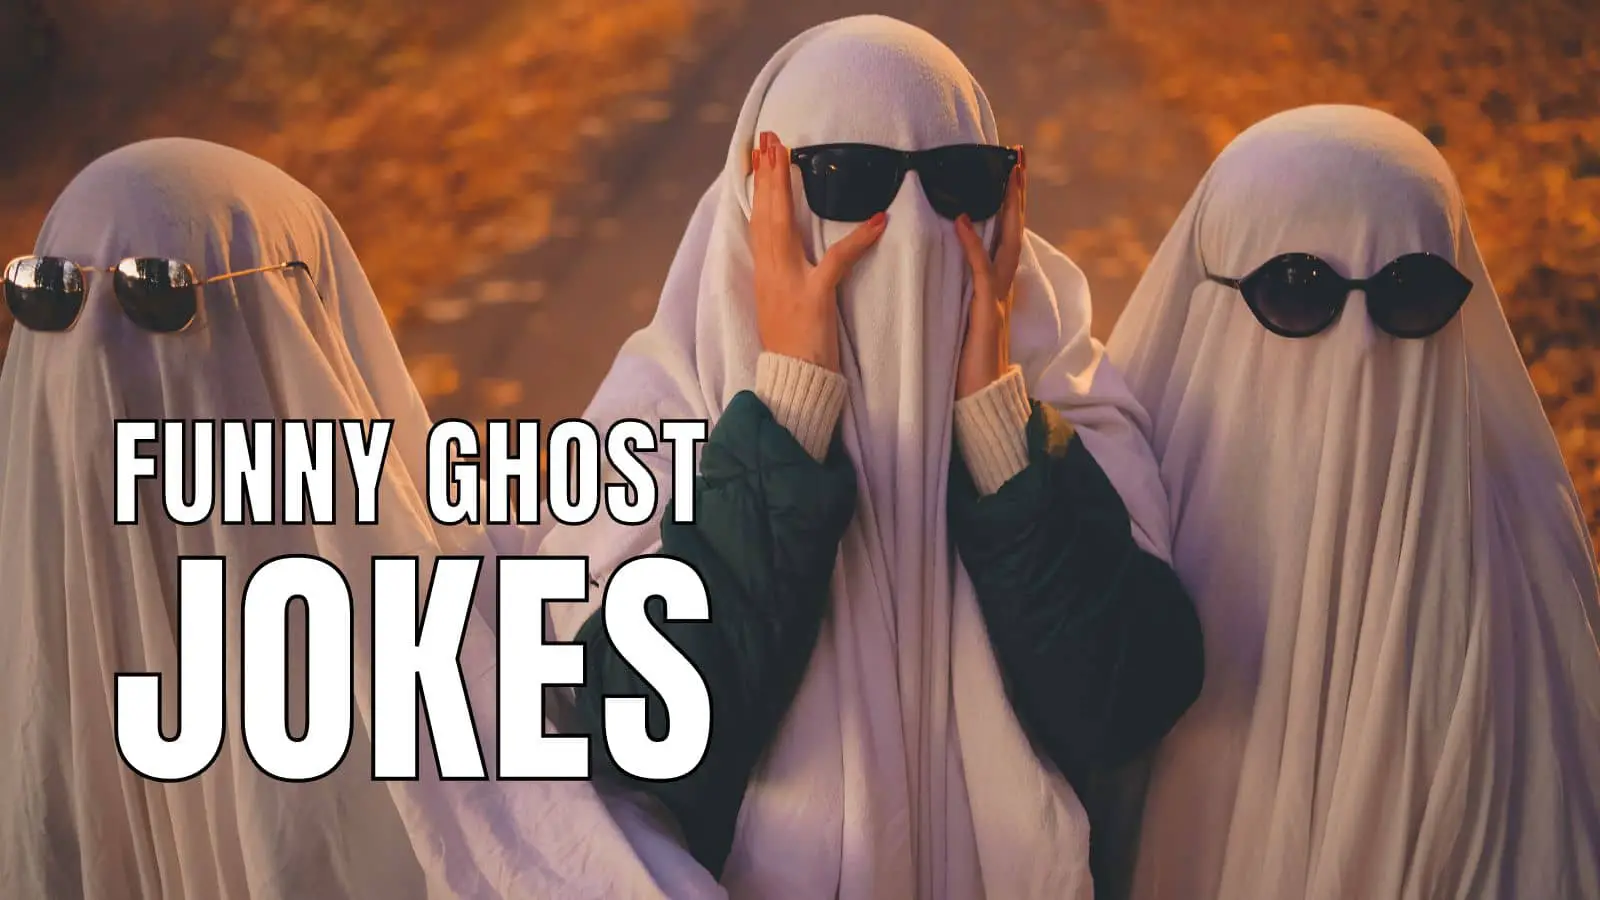 Funny Ghost Jokes on Halloween